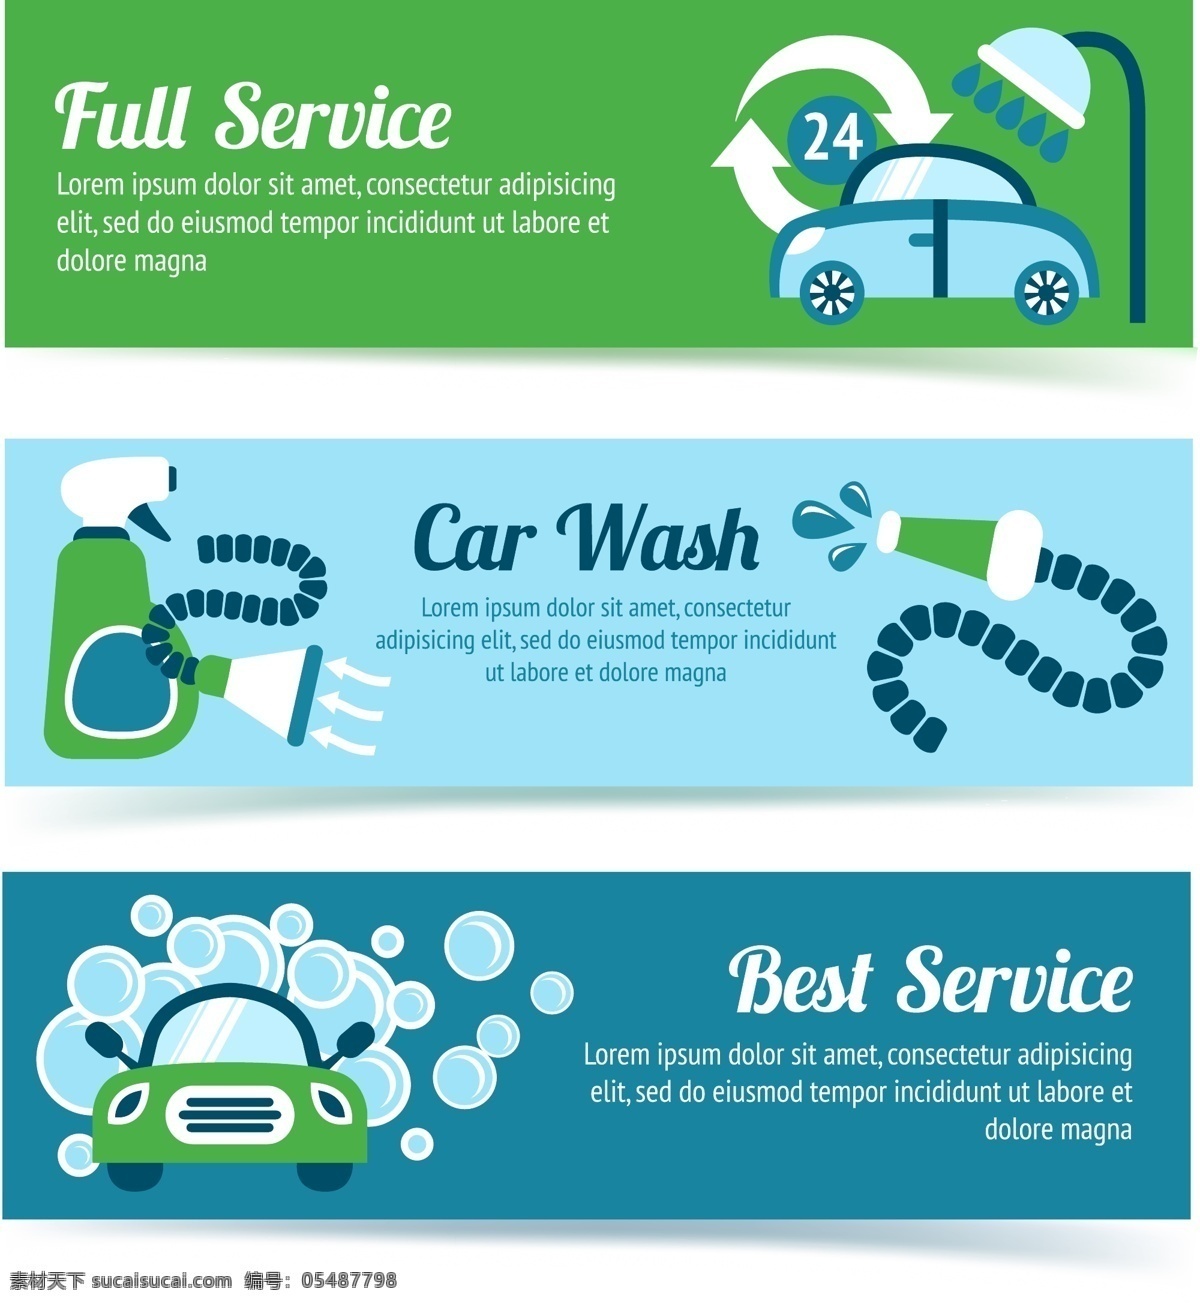 创意洗车服务 创意 洗车 服务 泡沫 洗涤剂 广告海报设计 招贴设计